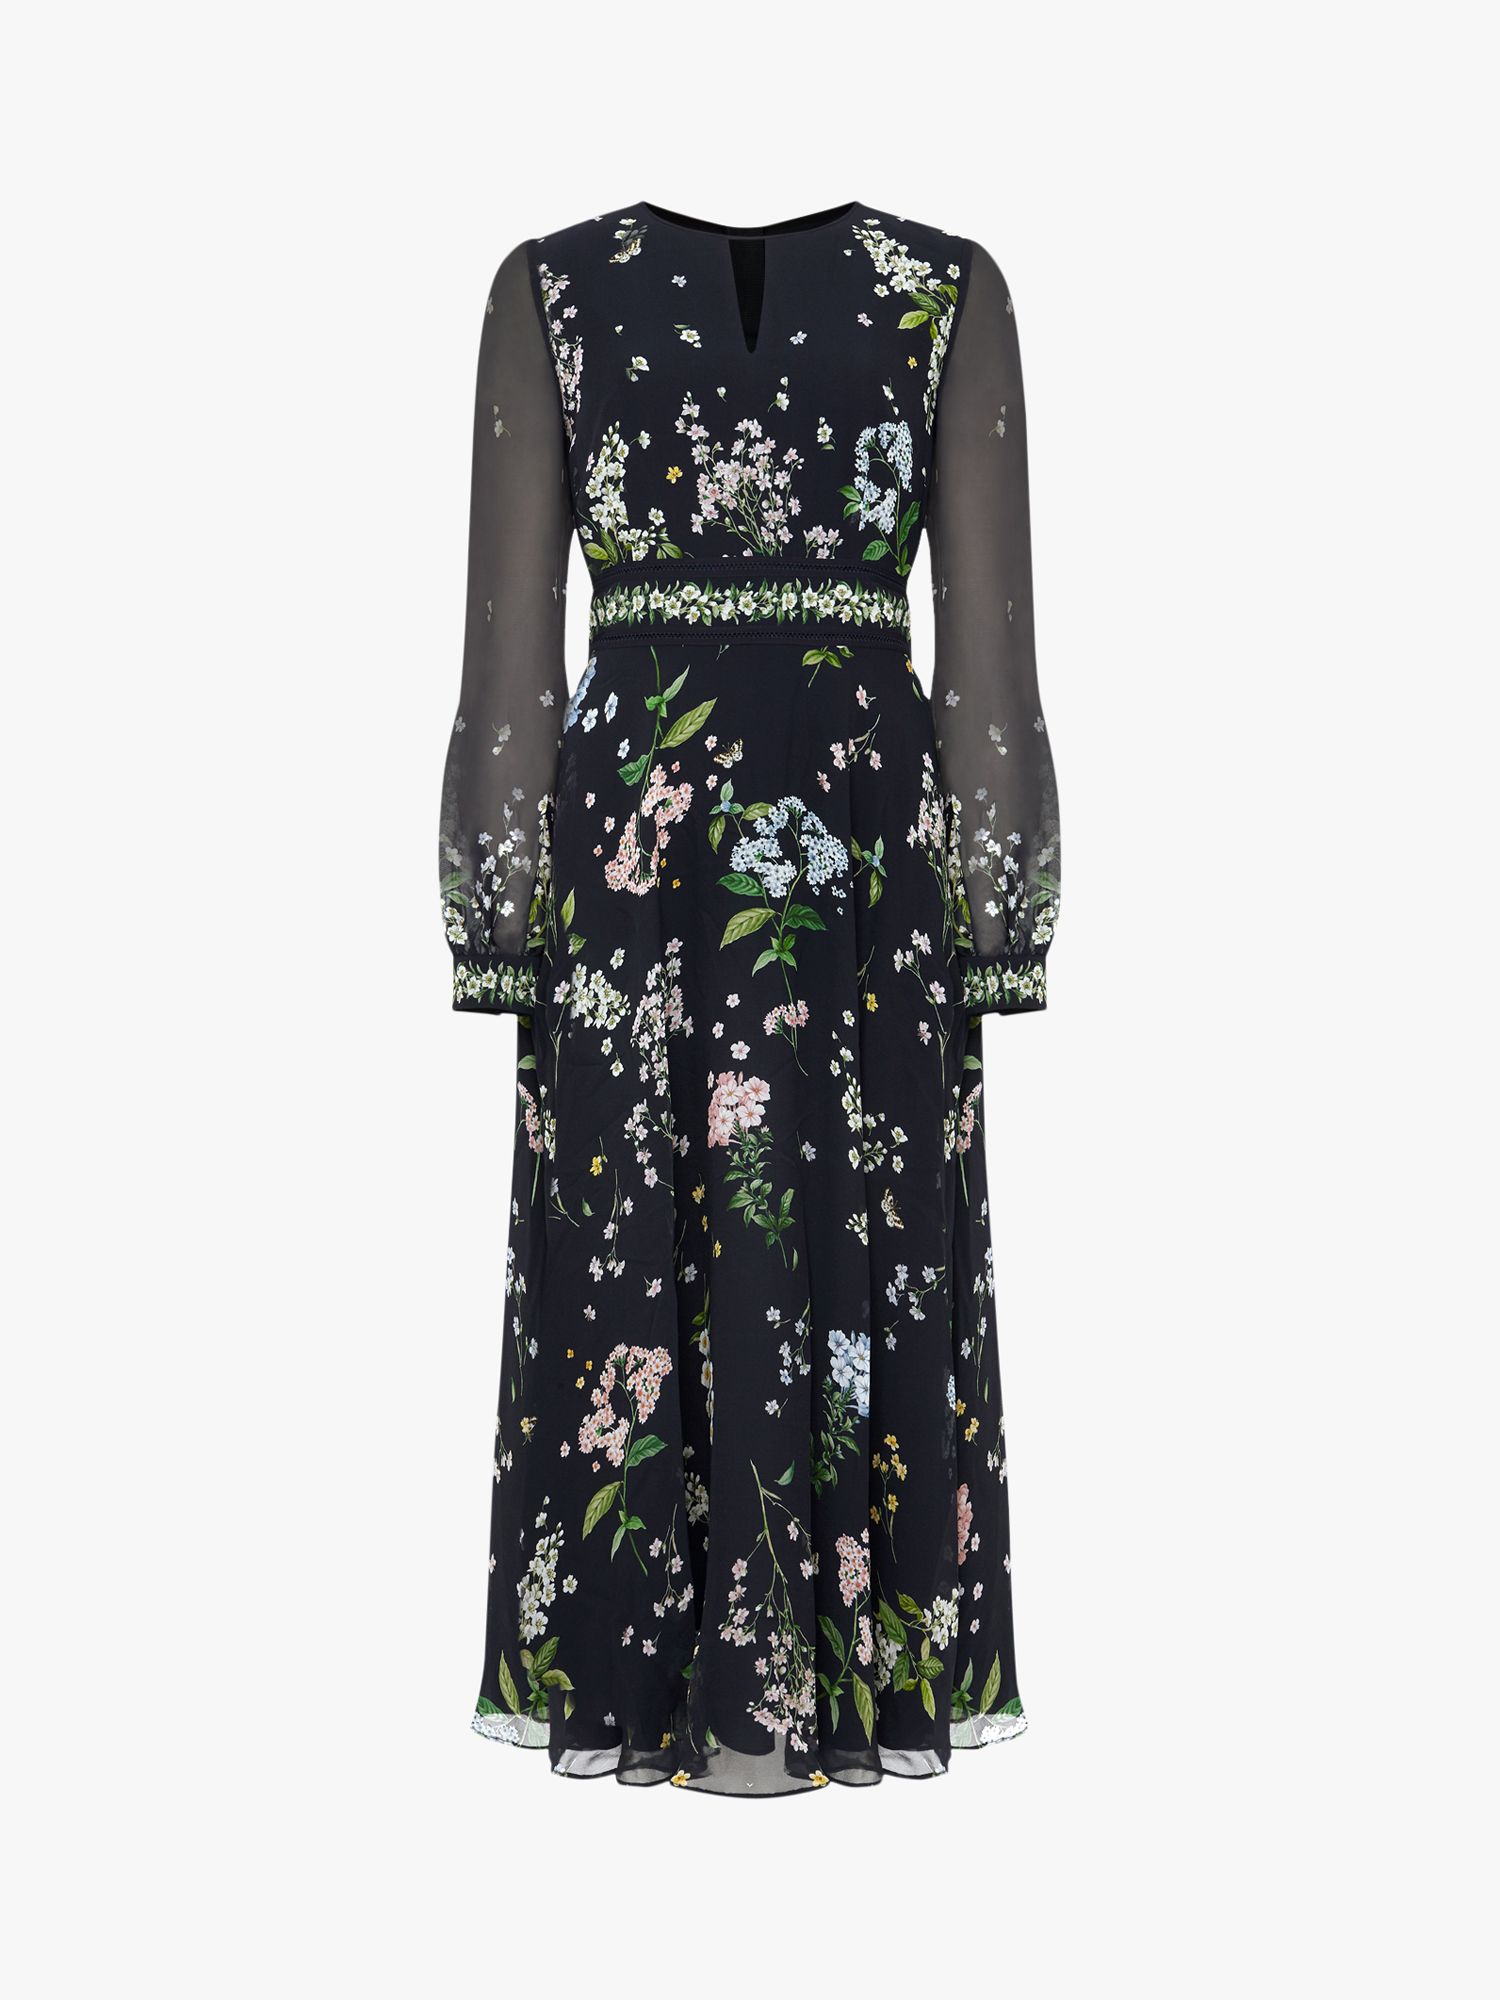 Hobbs Skye Silk Floral Dress, Navy/Multi at John Lewis & Partners